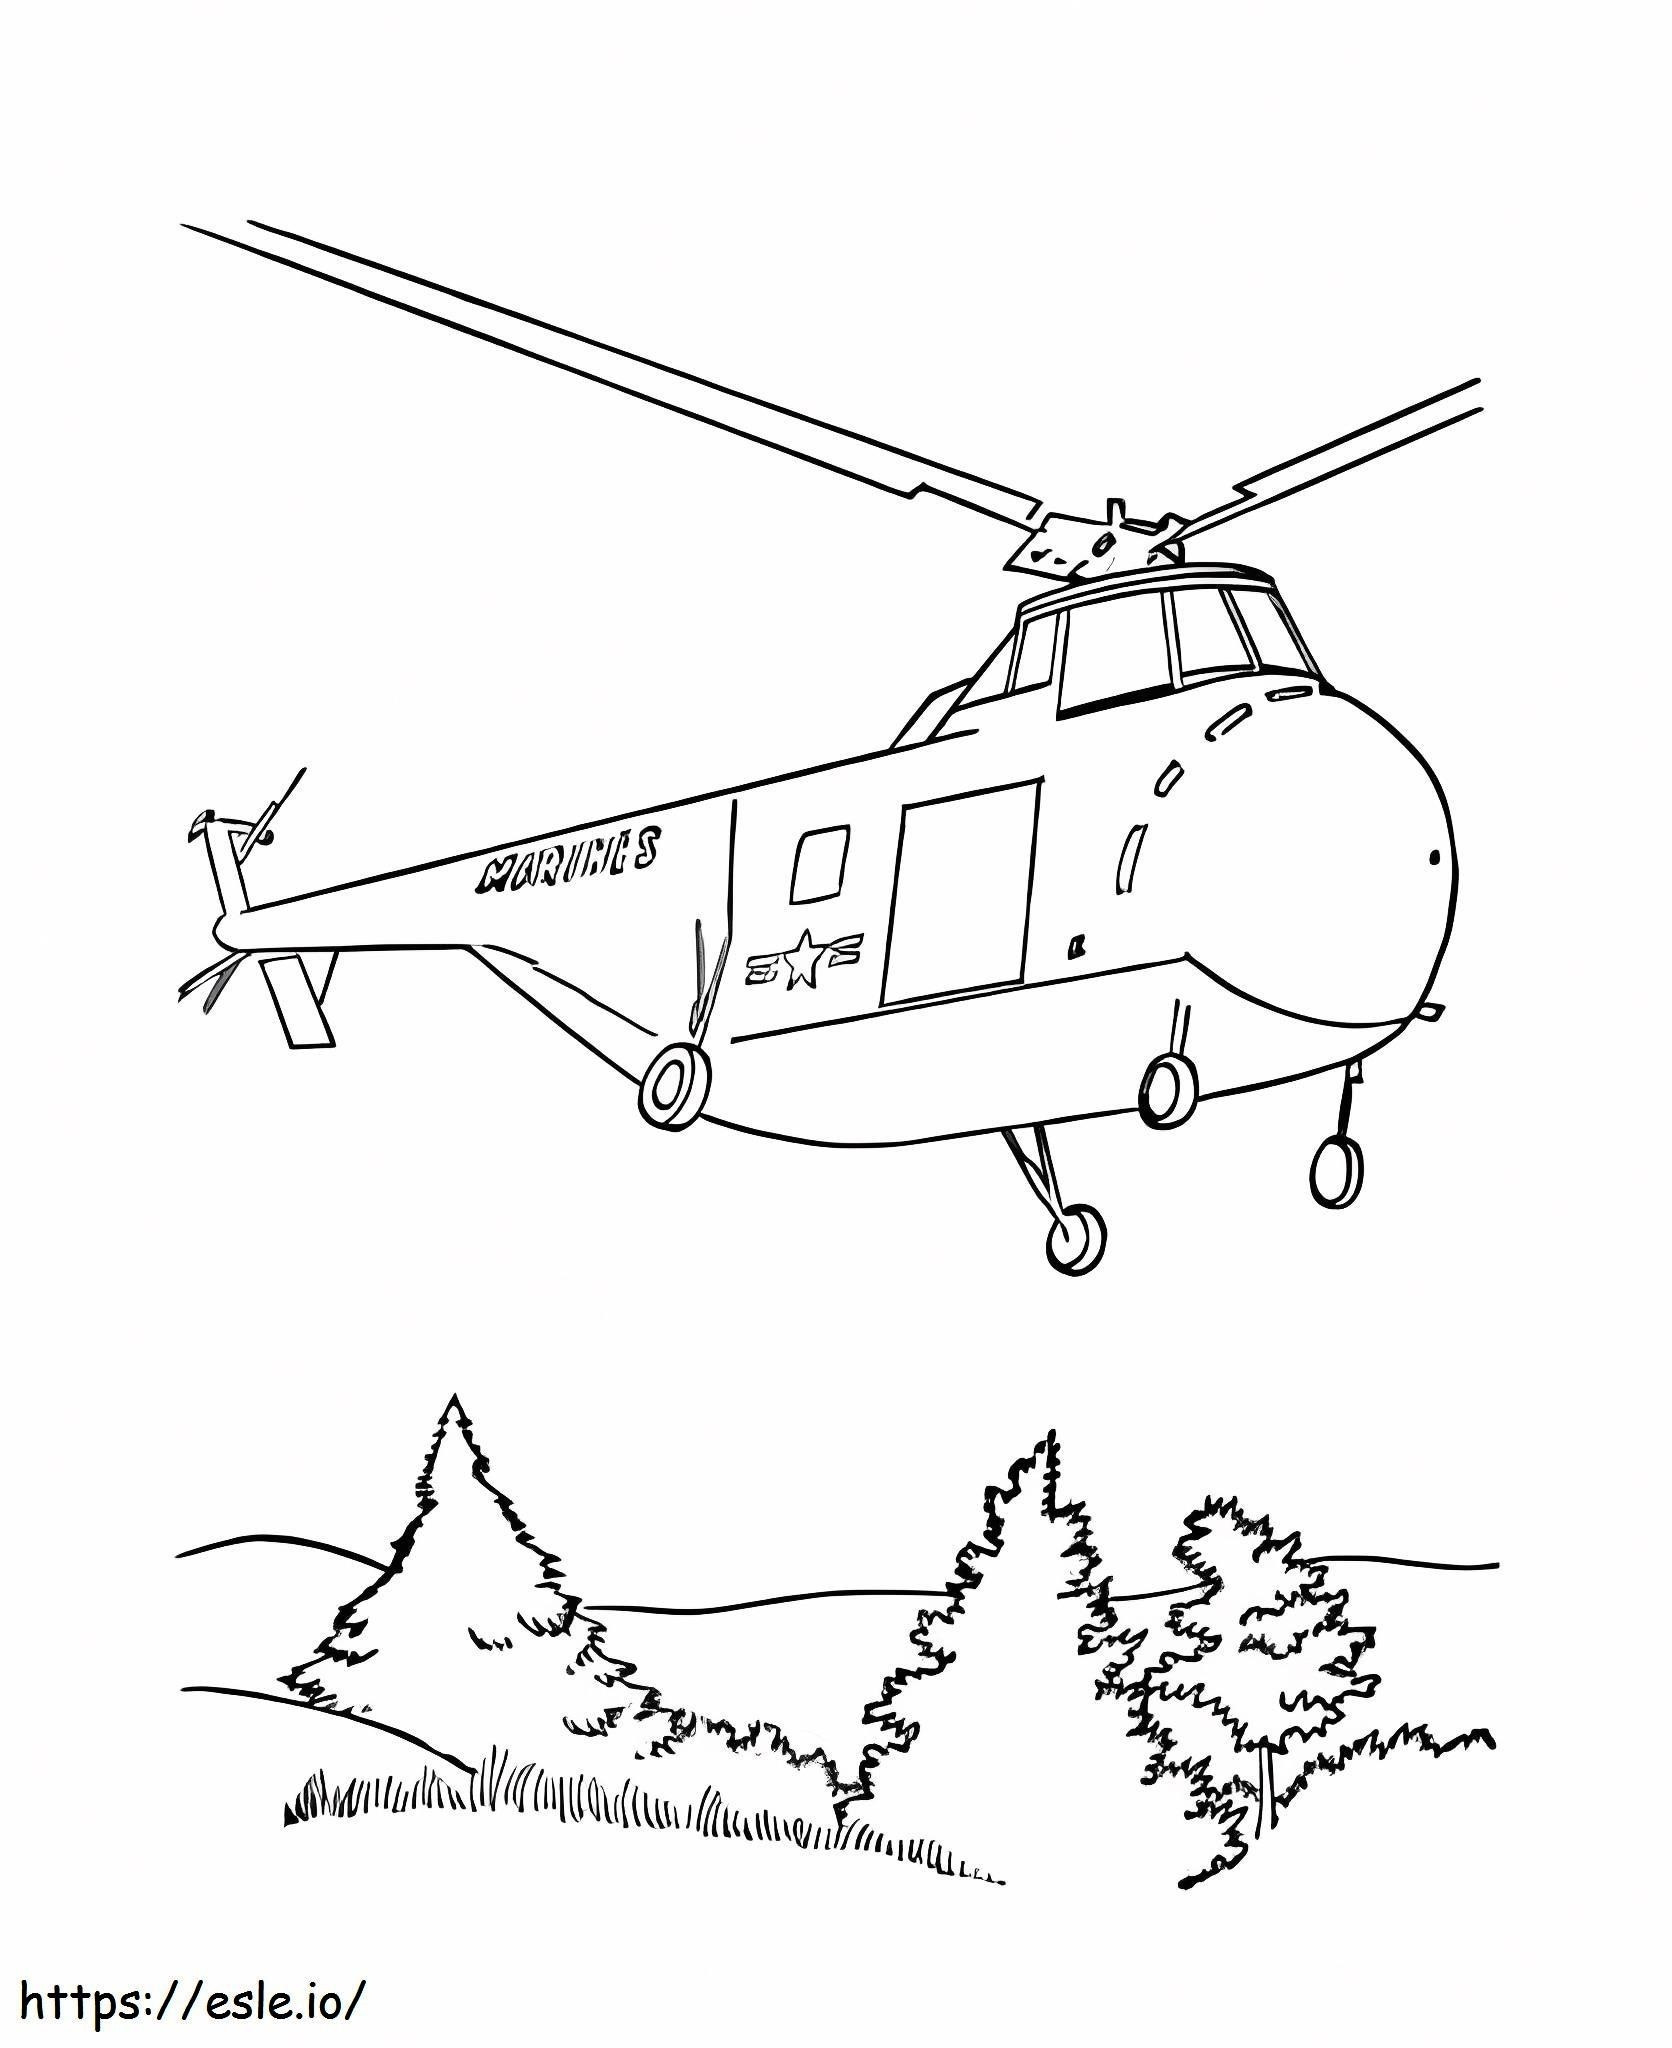 Helicóptero del ejército para colorear